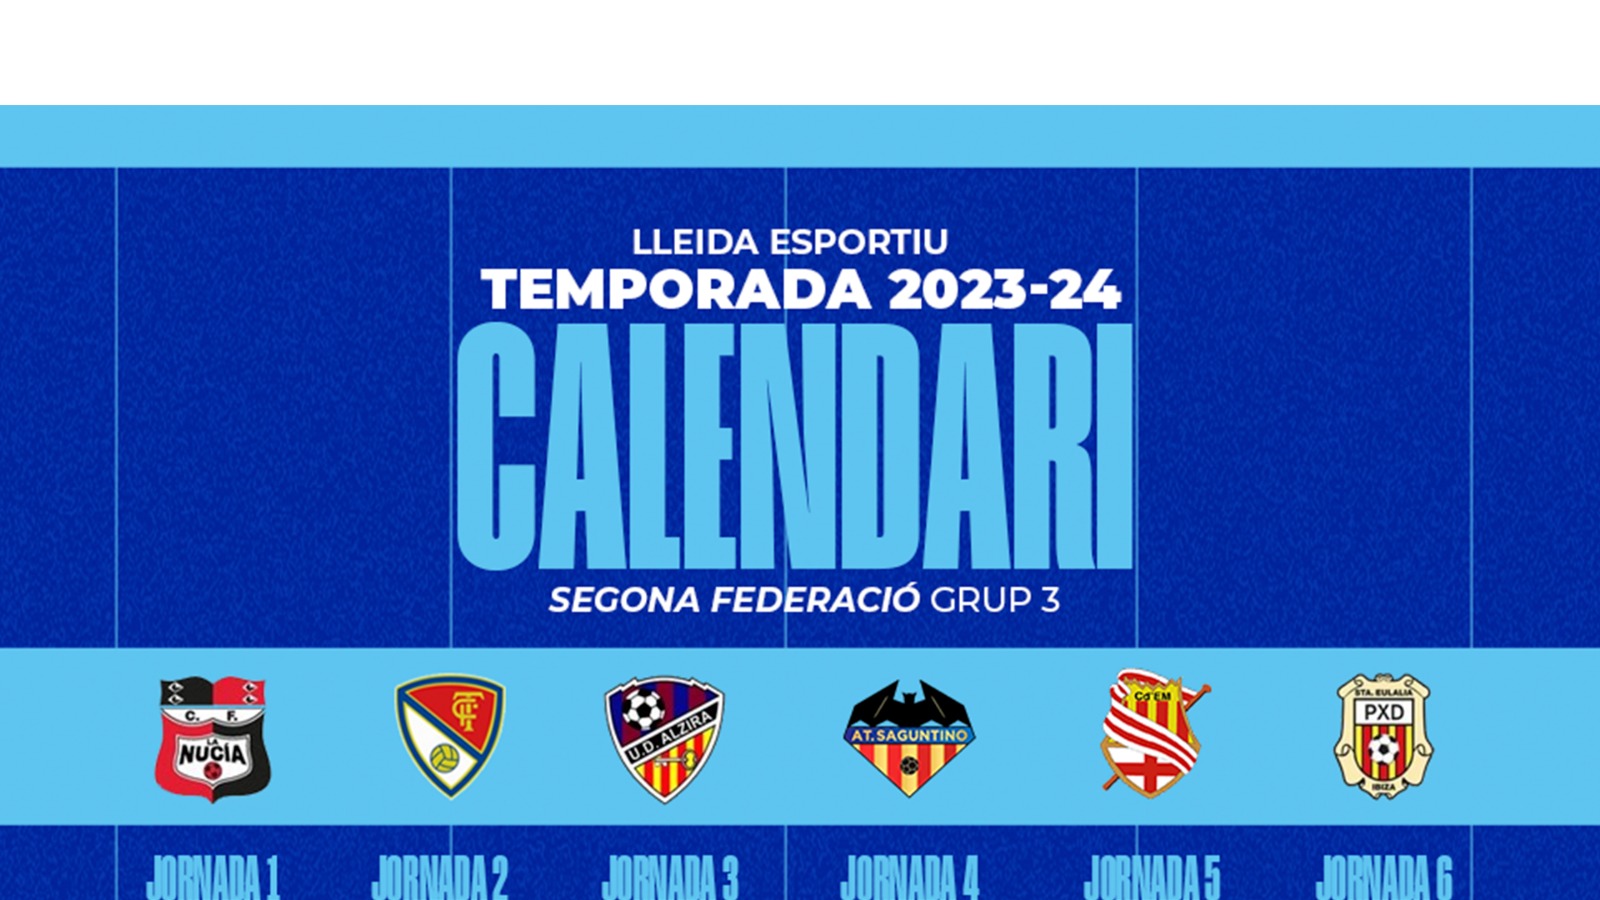 Lleida esportiu clasificación 23 24